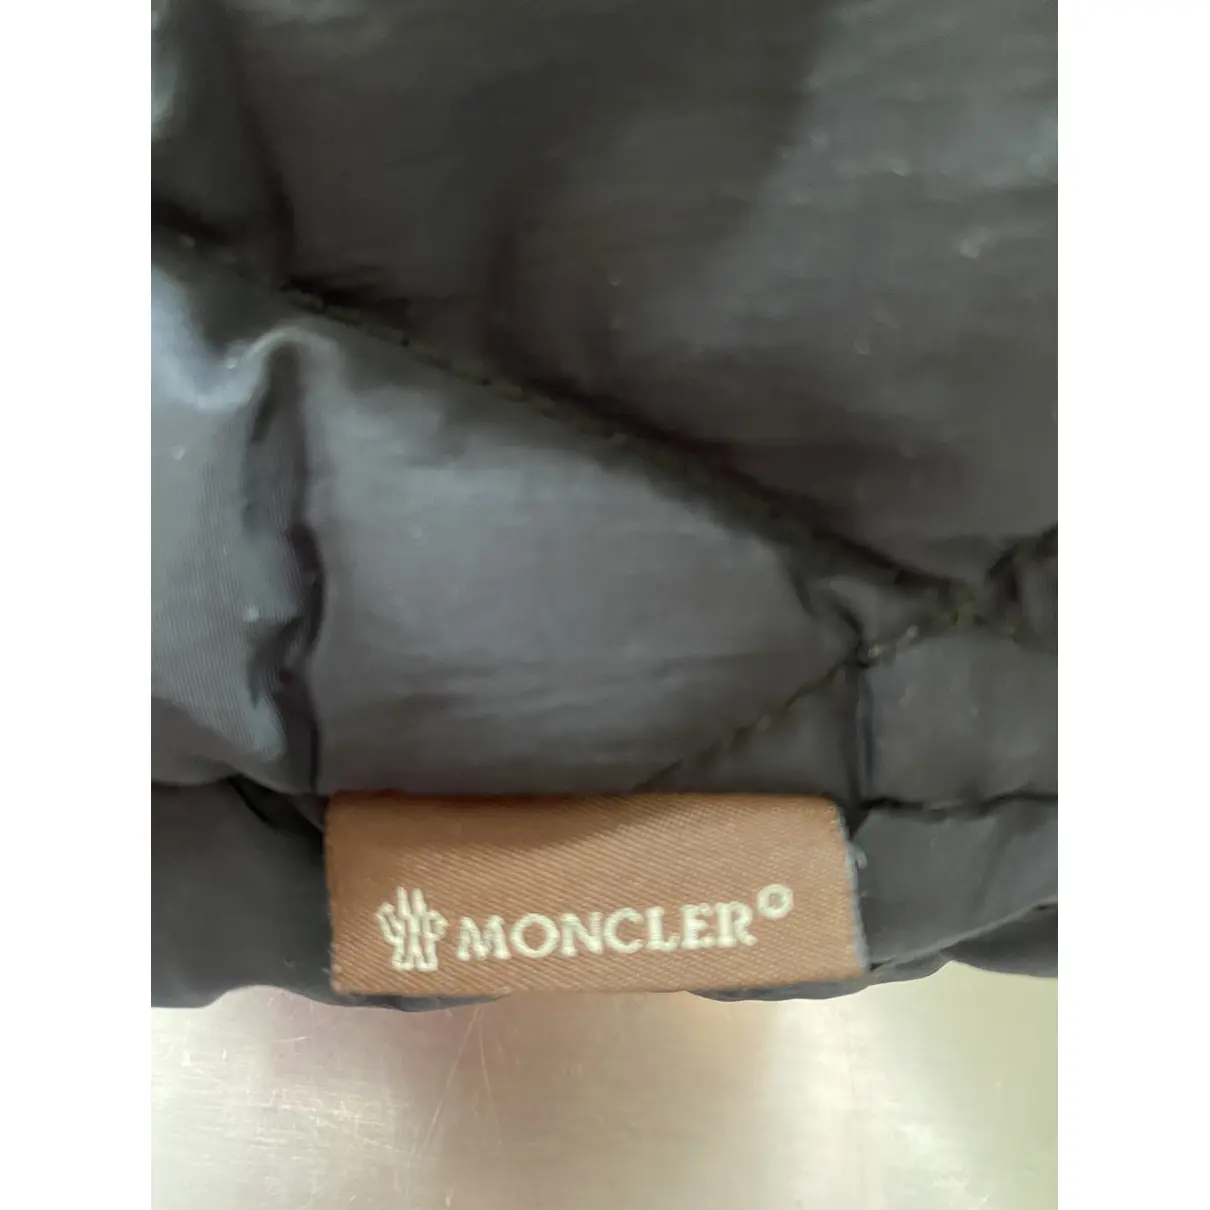 Jacket Moncler - Vintage